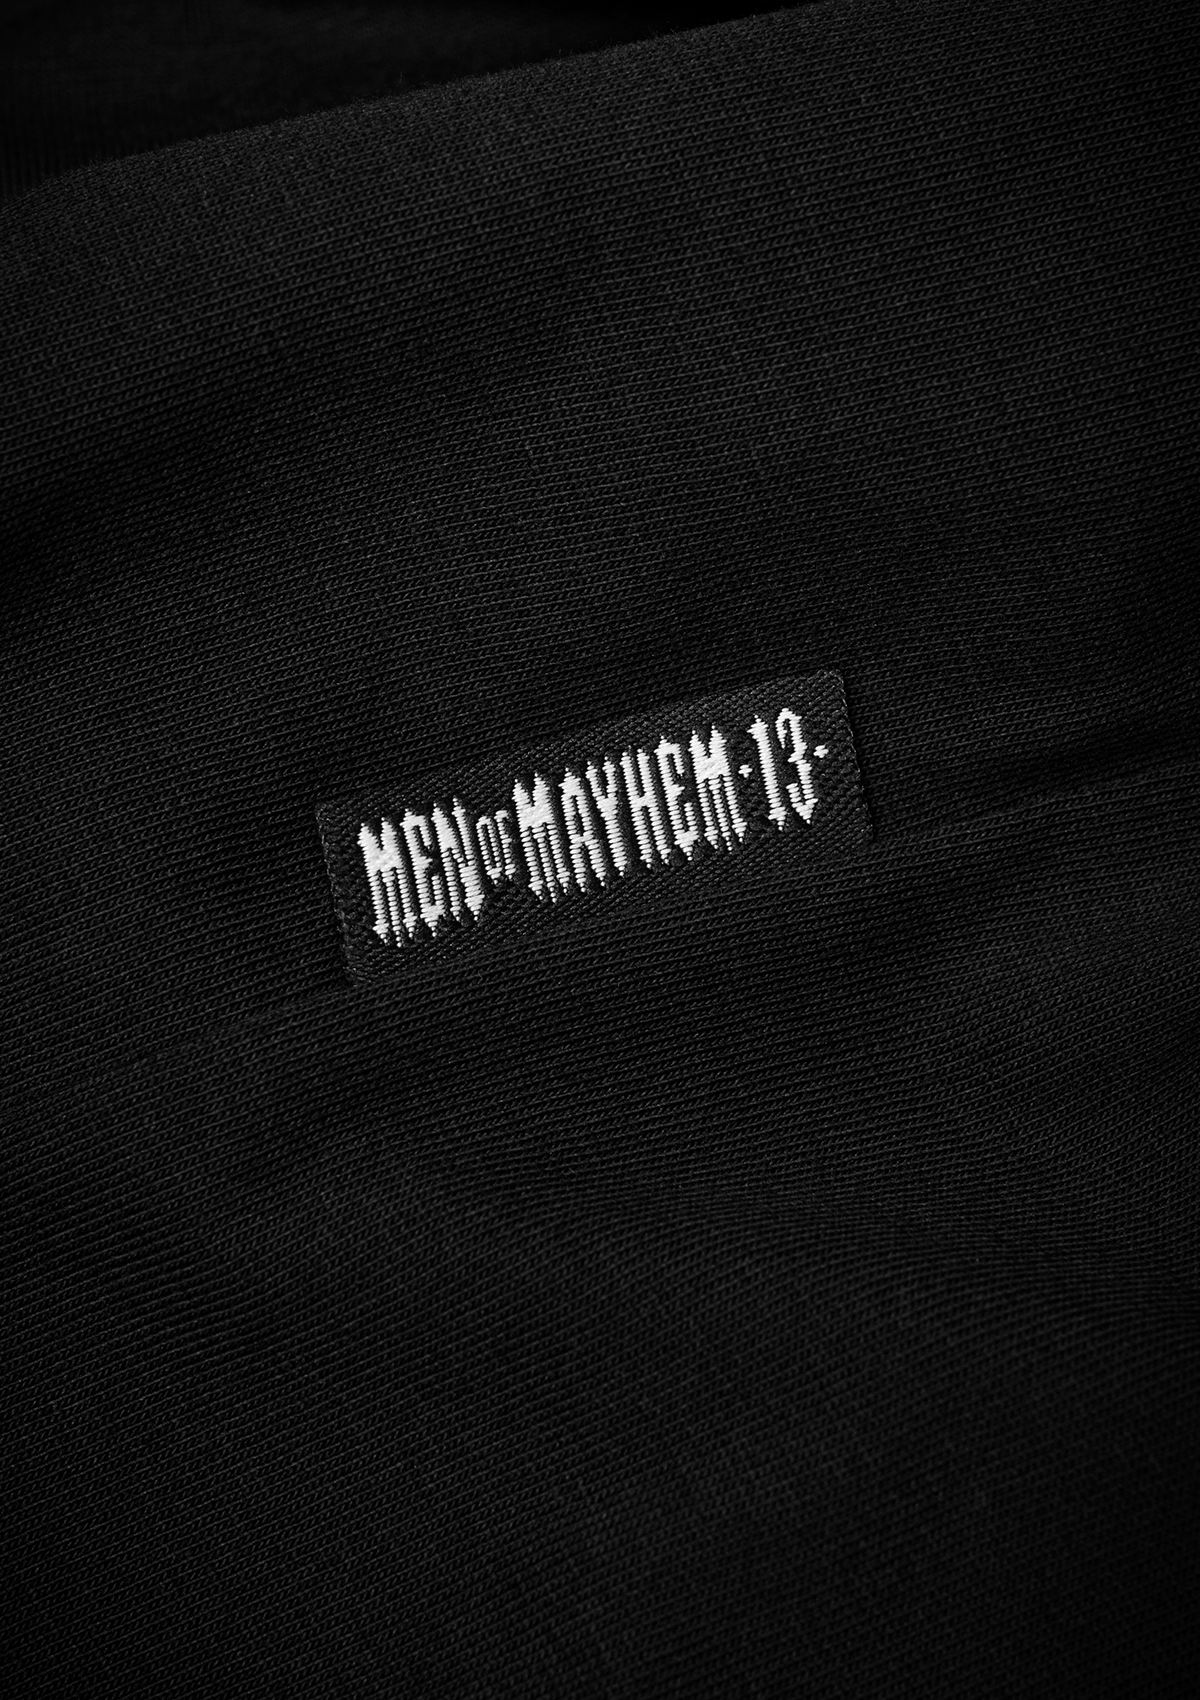 T-shirt Mayhem ROR 13 S/R